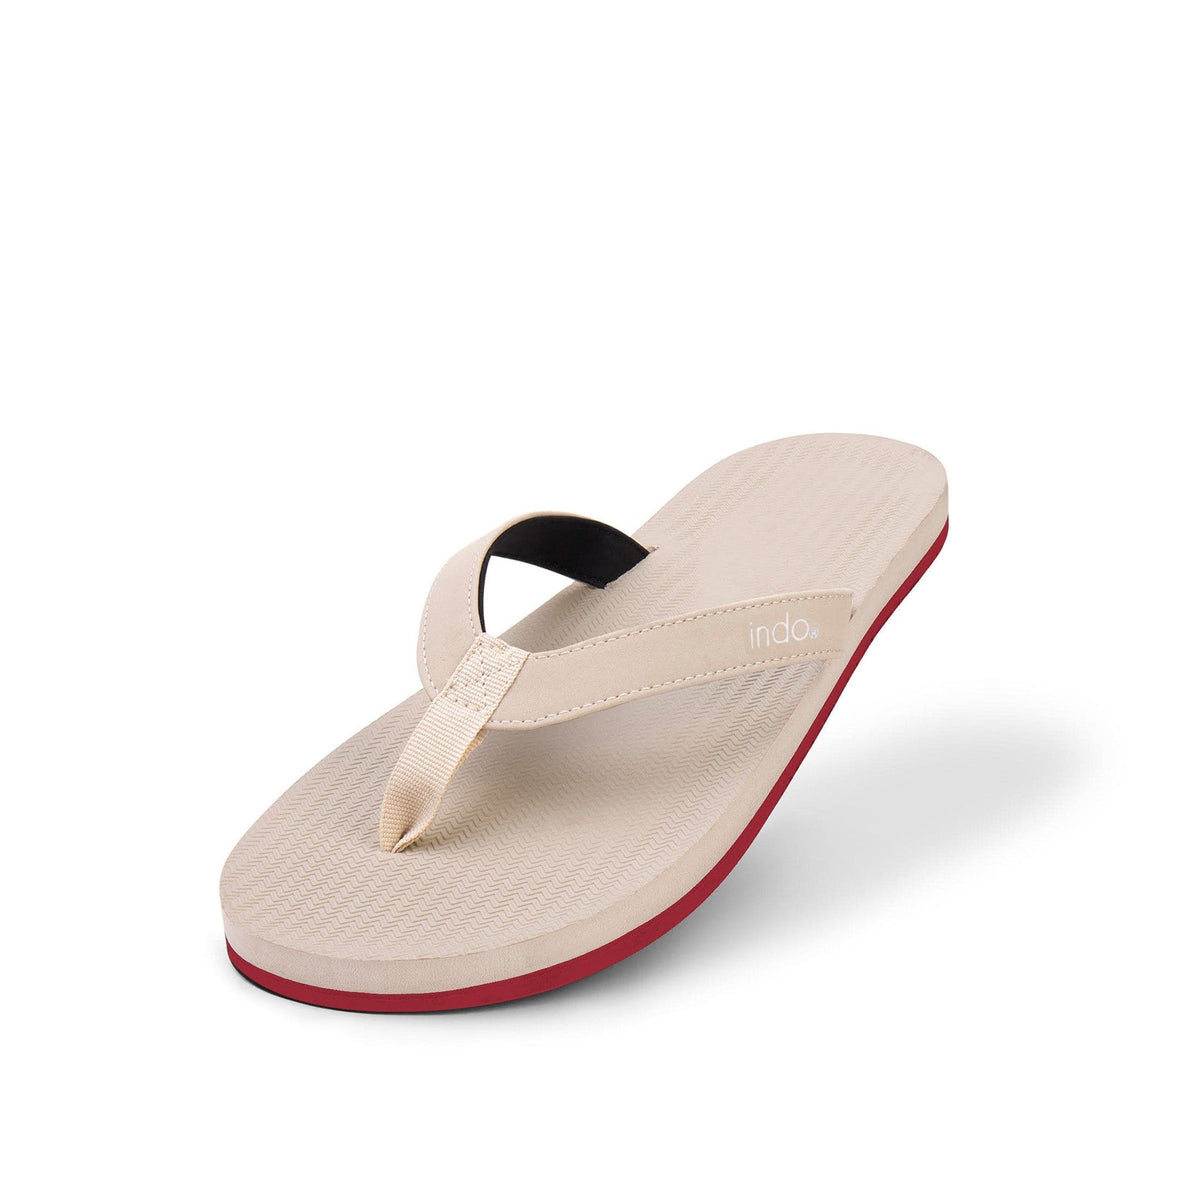 Women’s Flip Flops Sneaker Sole - Sea Salt/Red Sole - Indosole